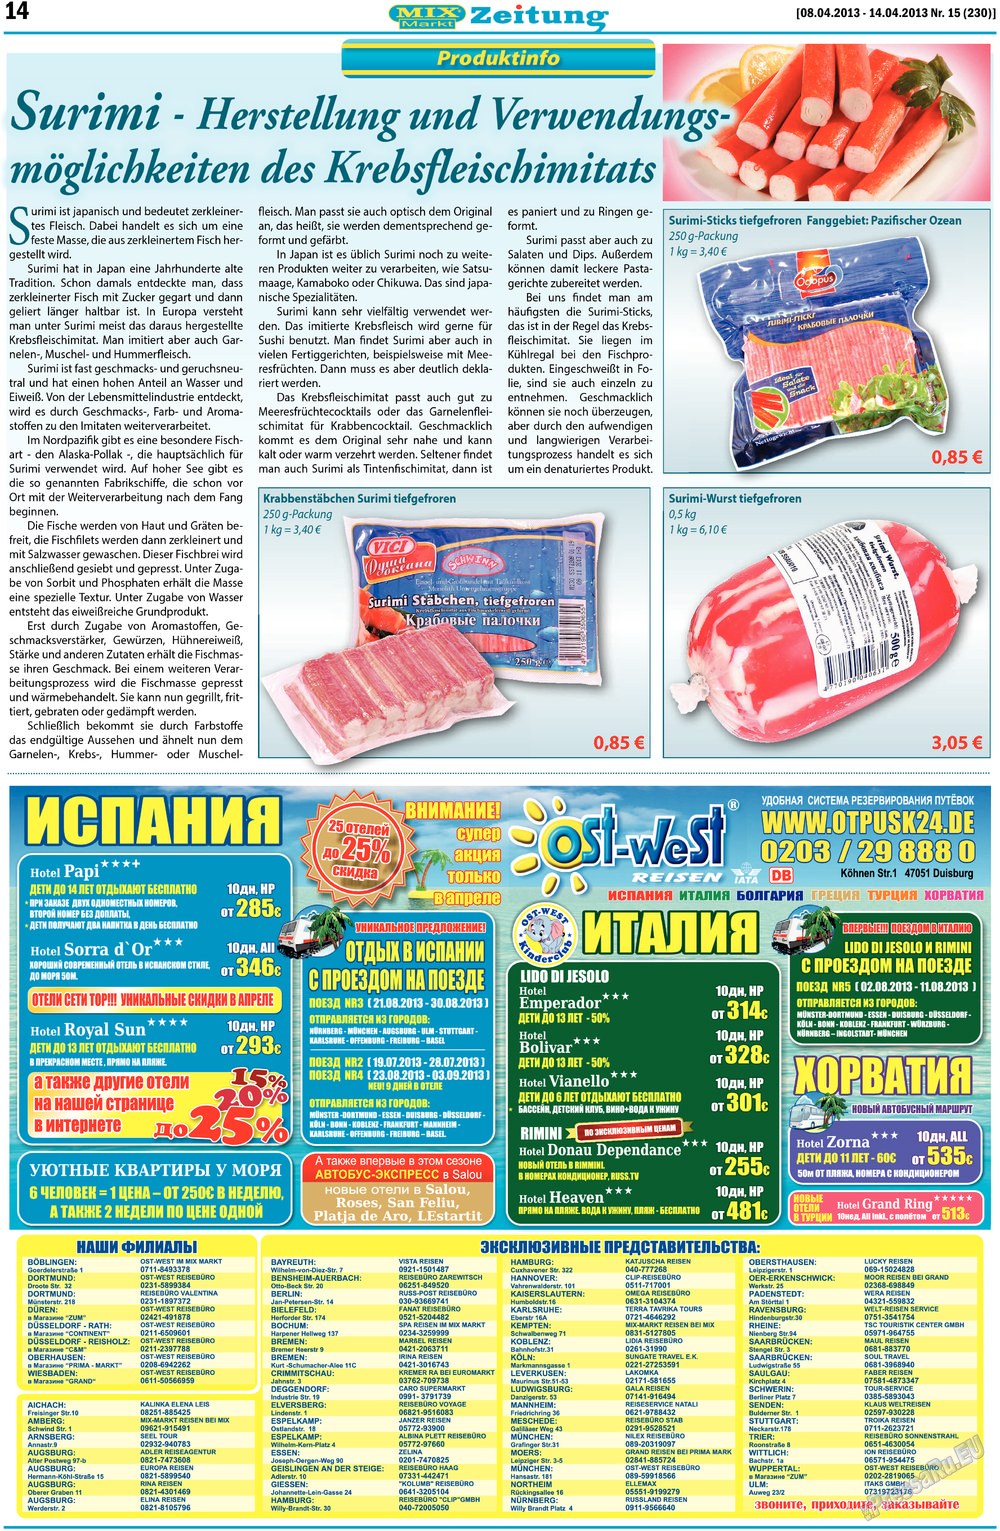 MIX-Markt Zeitung, газета. 2013 №15 стр.14